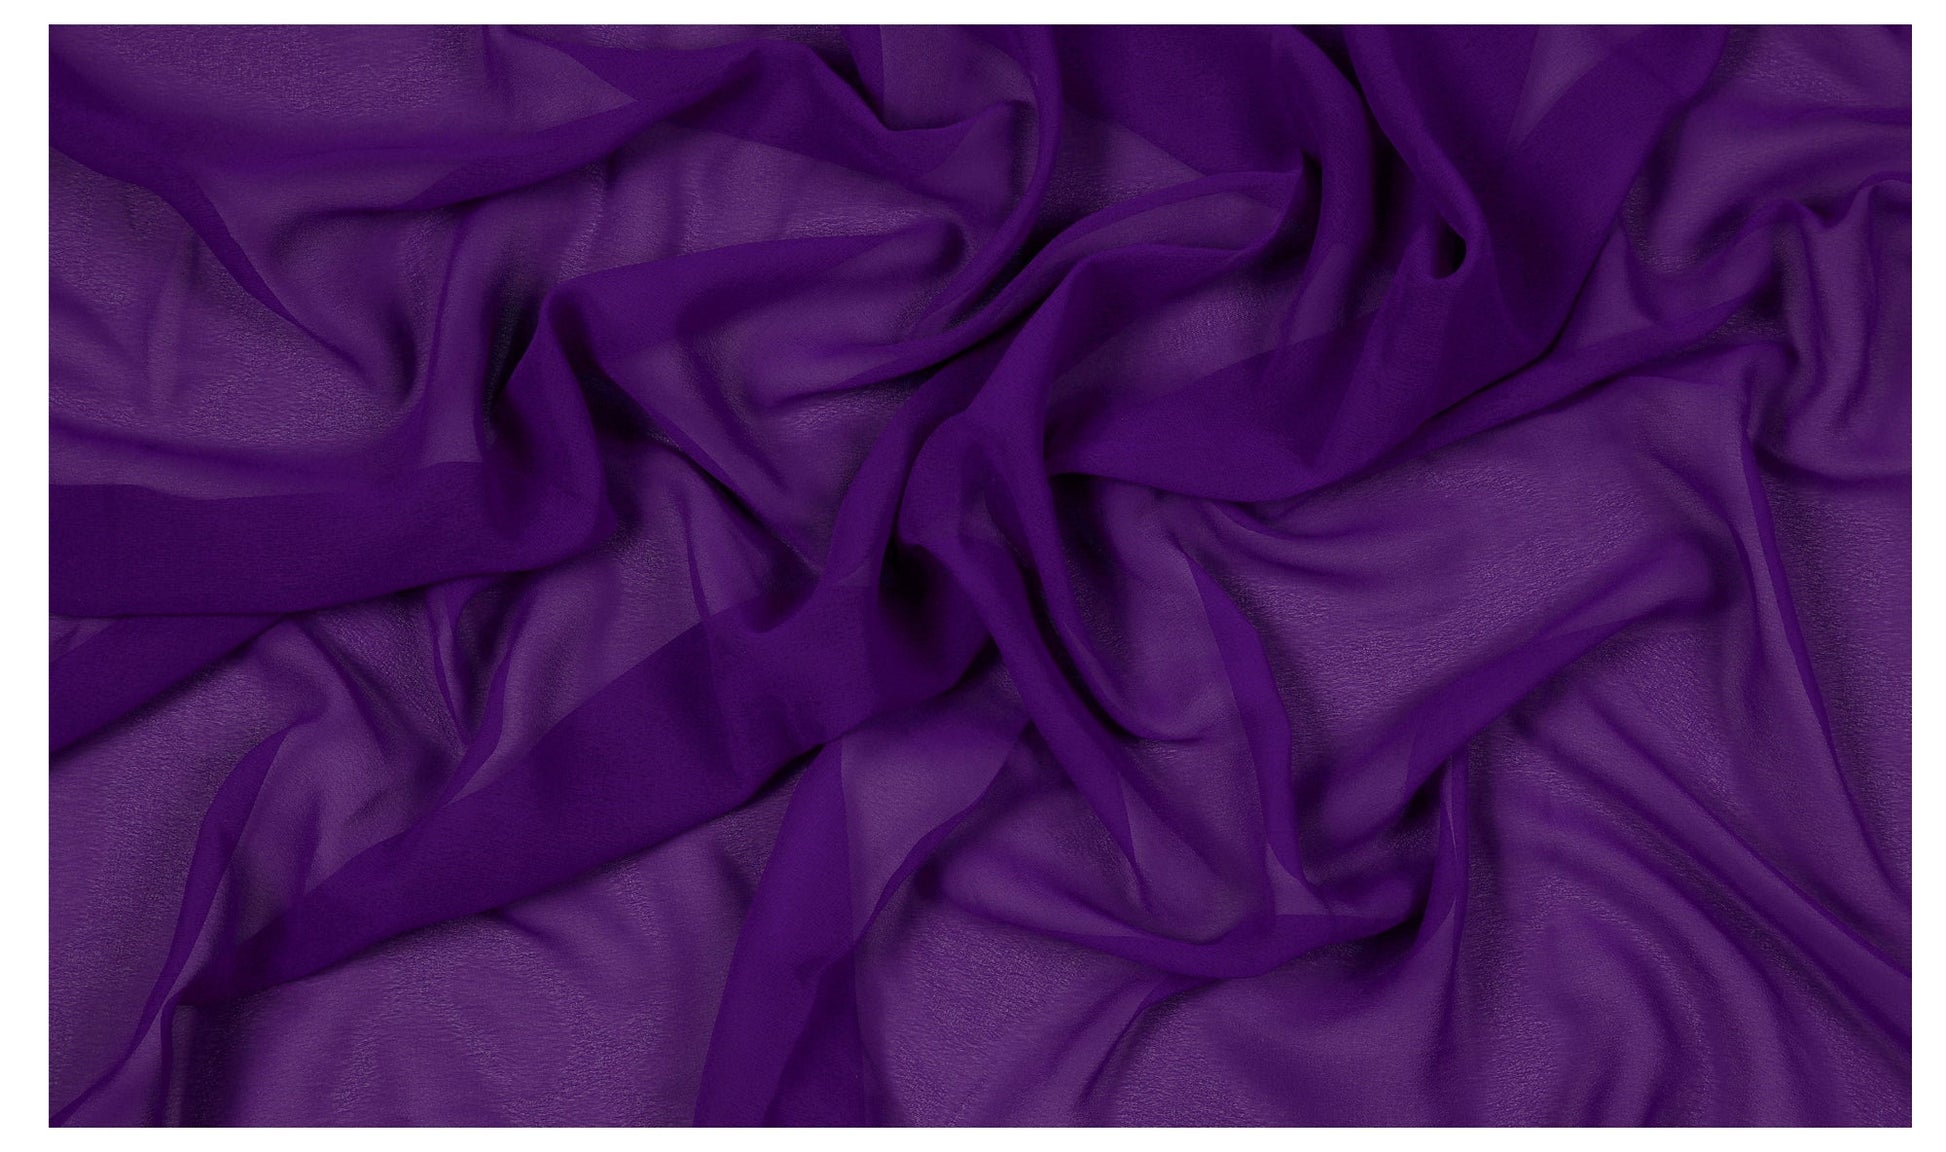 Cadbury Purple,5453fe77-a8f5-4cbb-baff-b36350b6efce